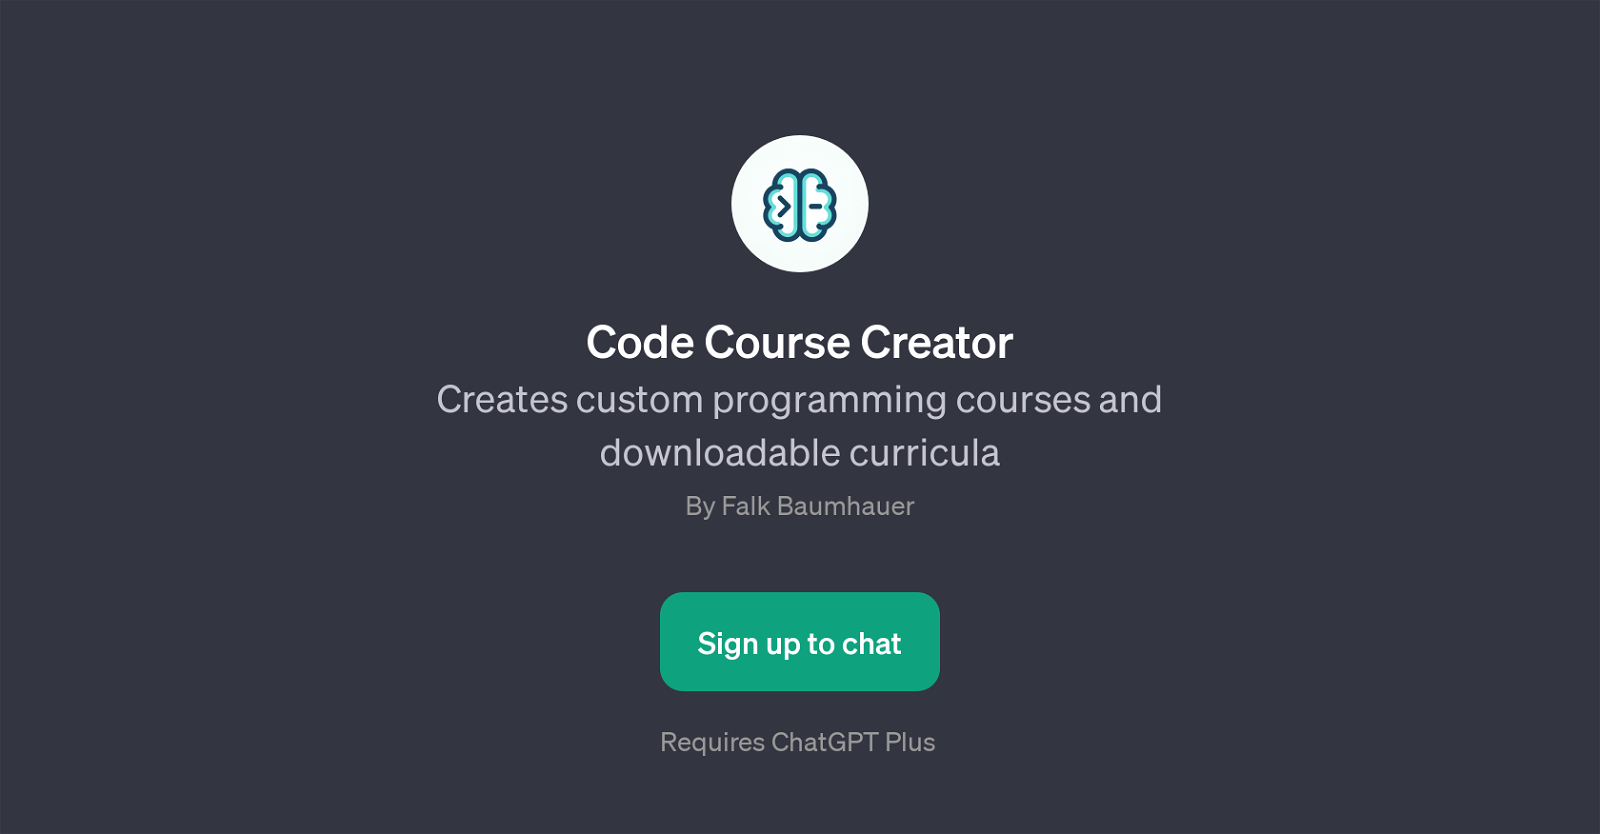 Code Course Creator website